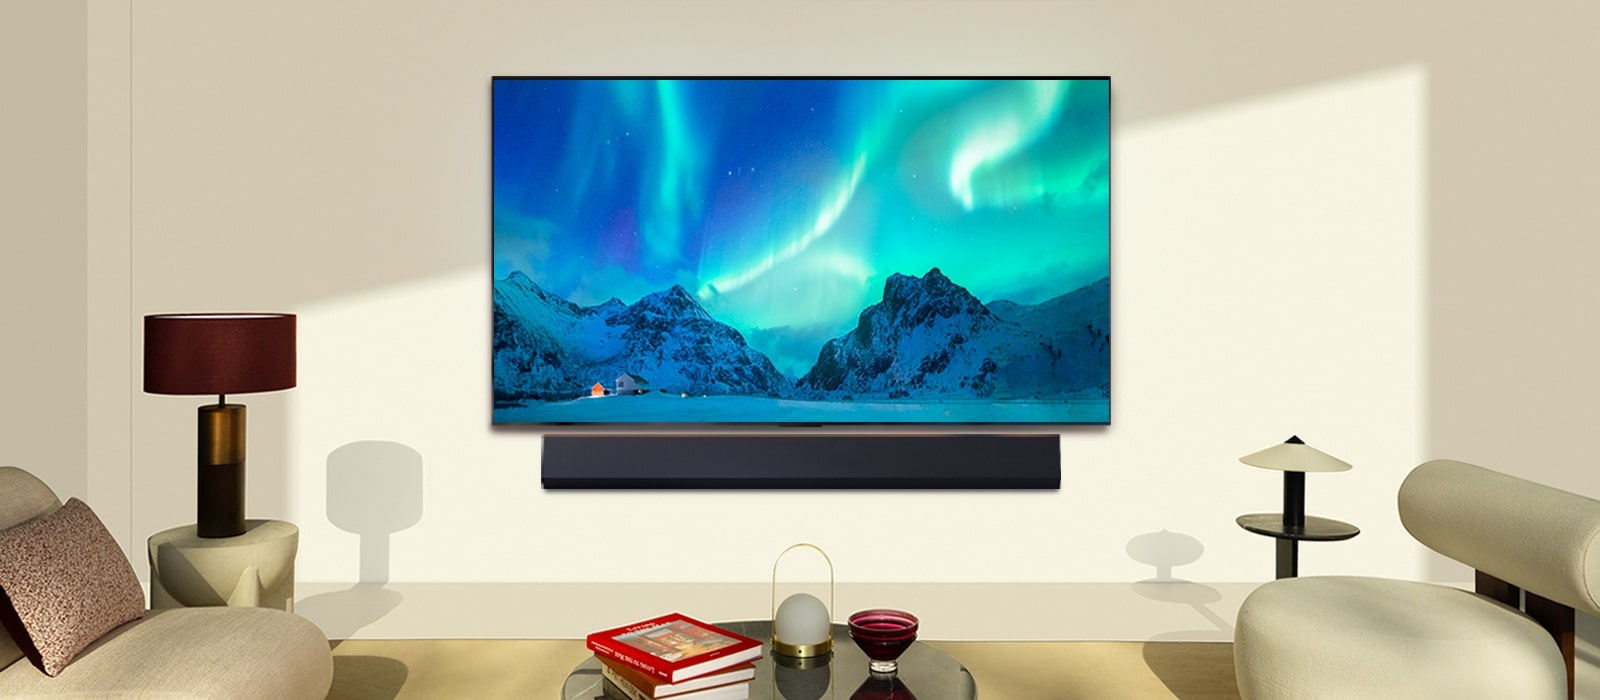 Телевизор LG OLED TV и звуковая панель LG Soundbar в современном жилом пространстве в дневное время. Изображение северного сияния на экране отображается с идеальным уровнем яркости.